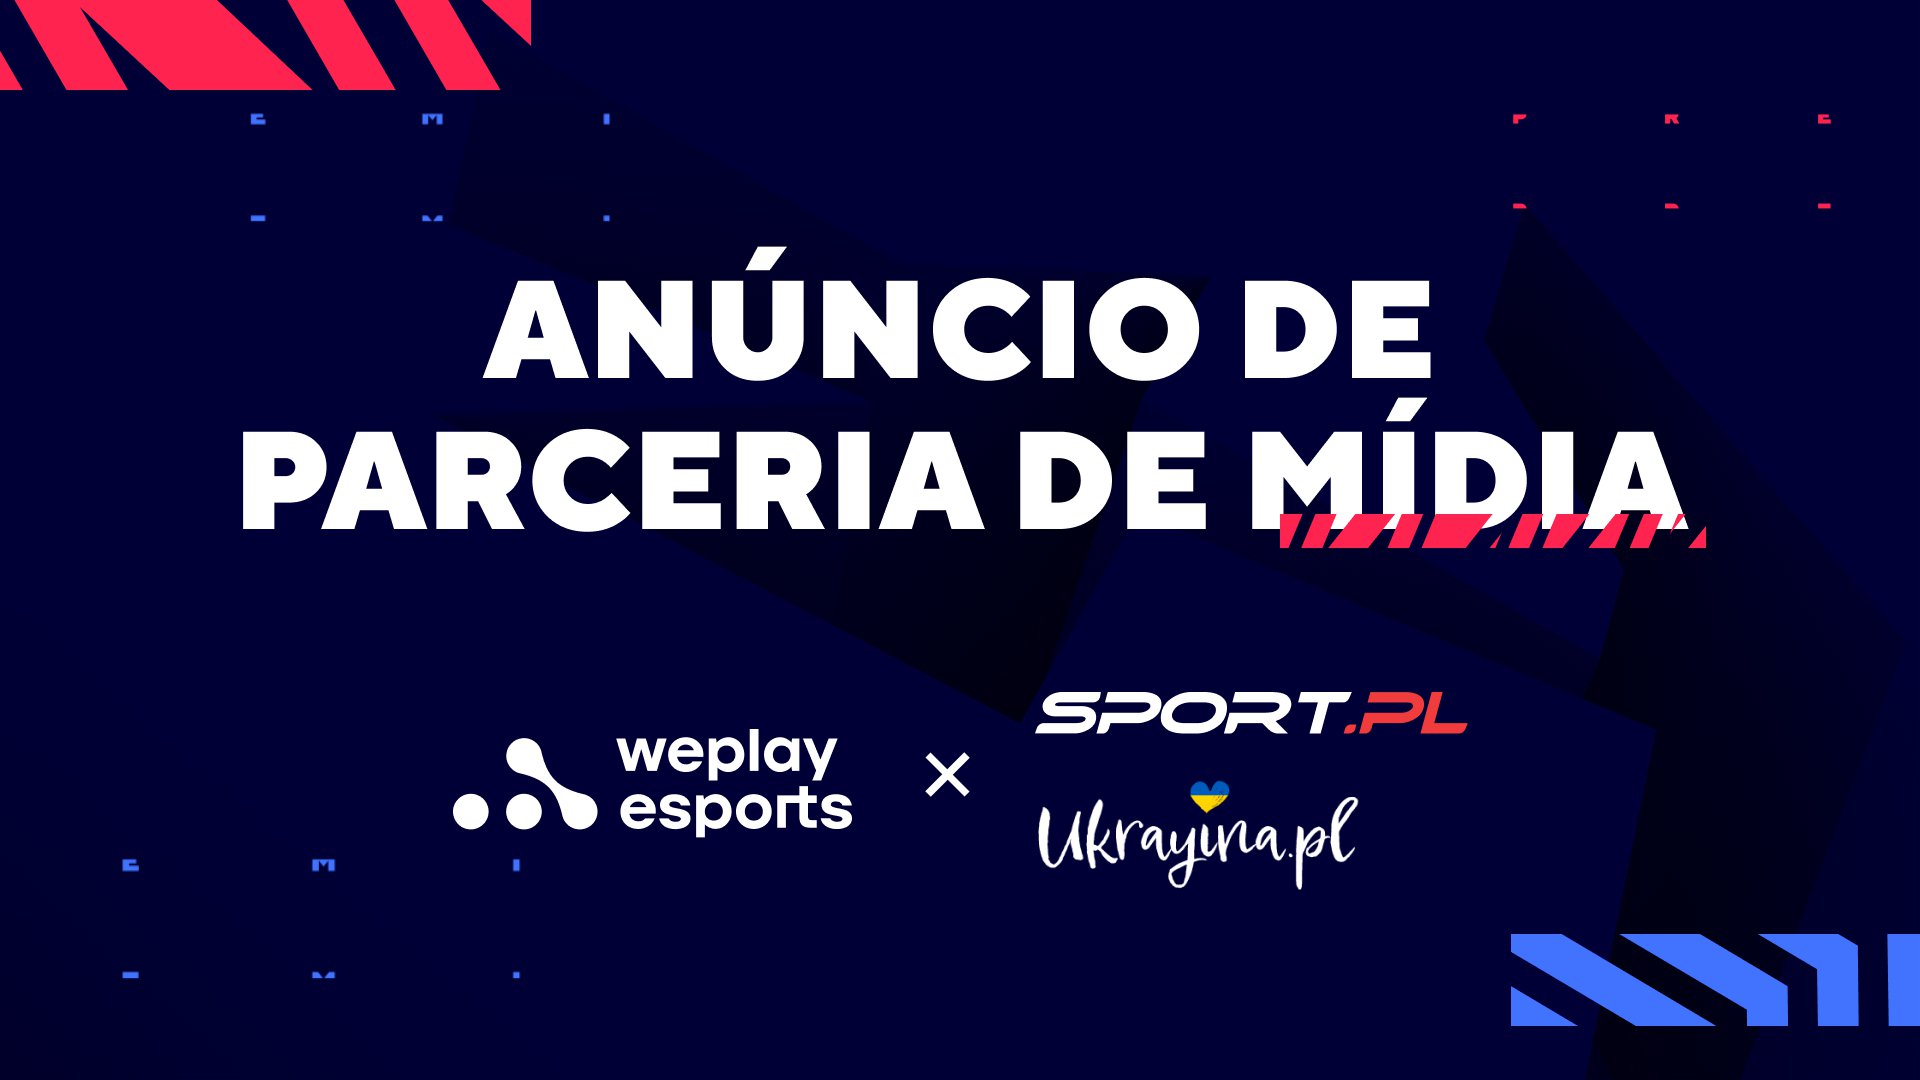 Sport.pl and Ukrayina.pl tornam-se parceiros de mídia de transmissão em ucraniano da WePlay Esports. Imagem: WePlay Holding